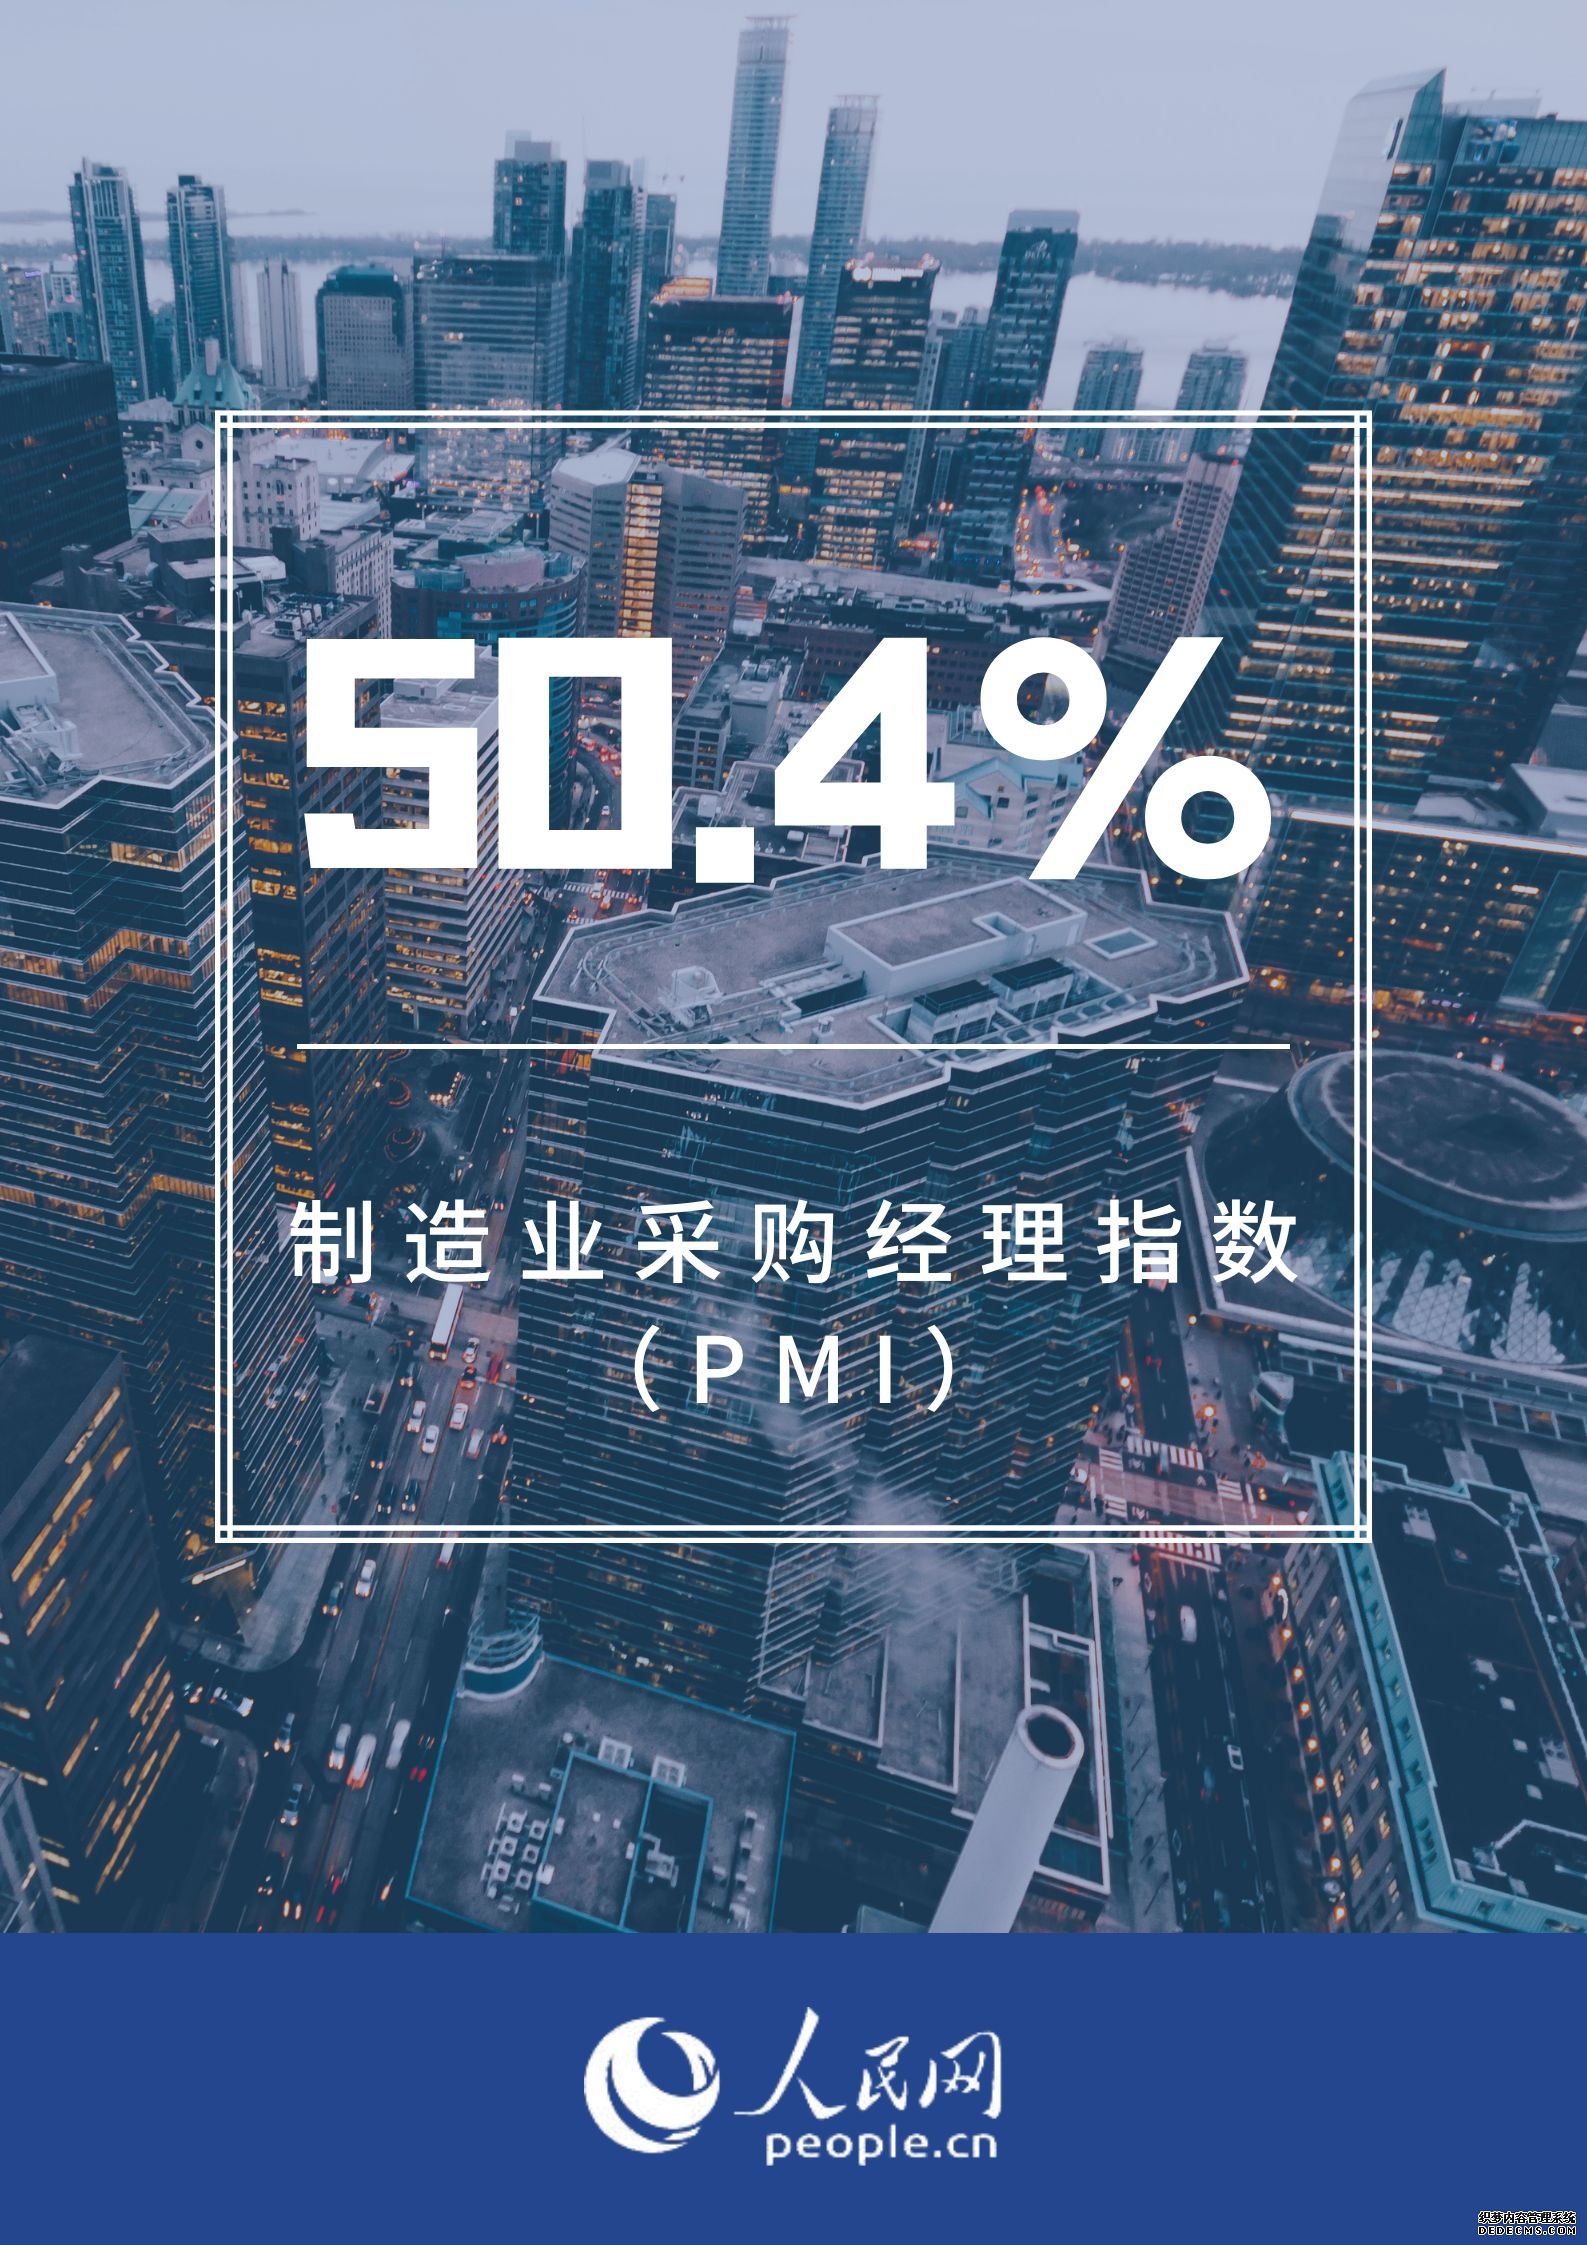 4月PMI为50.4% 制造业继续保持恢复发展态势